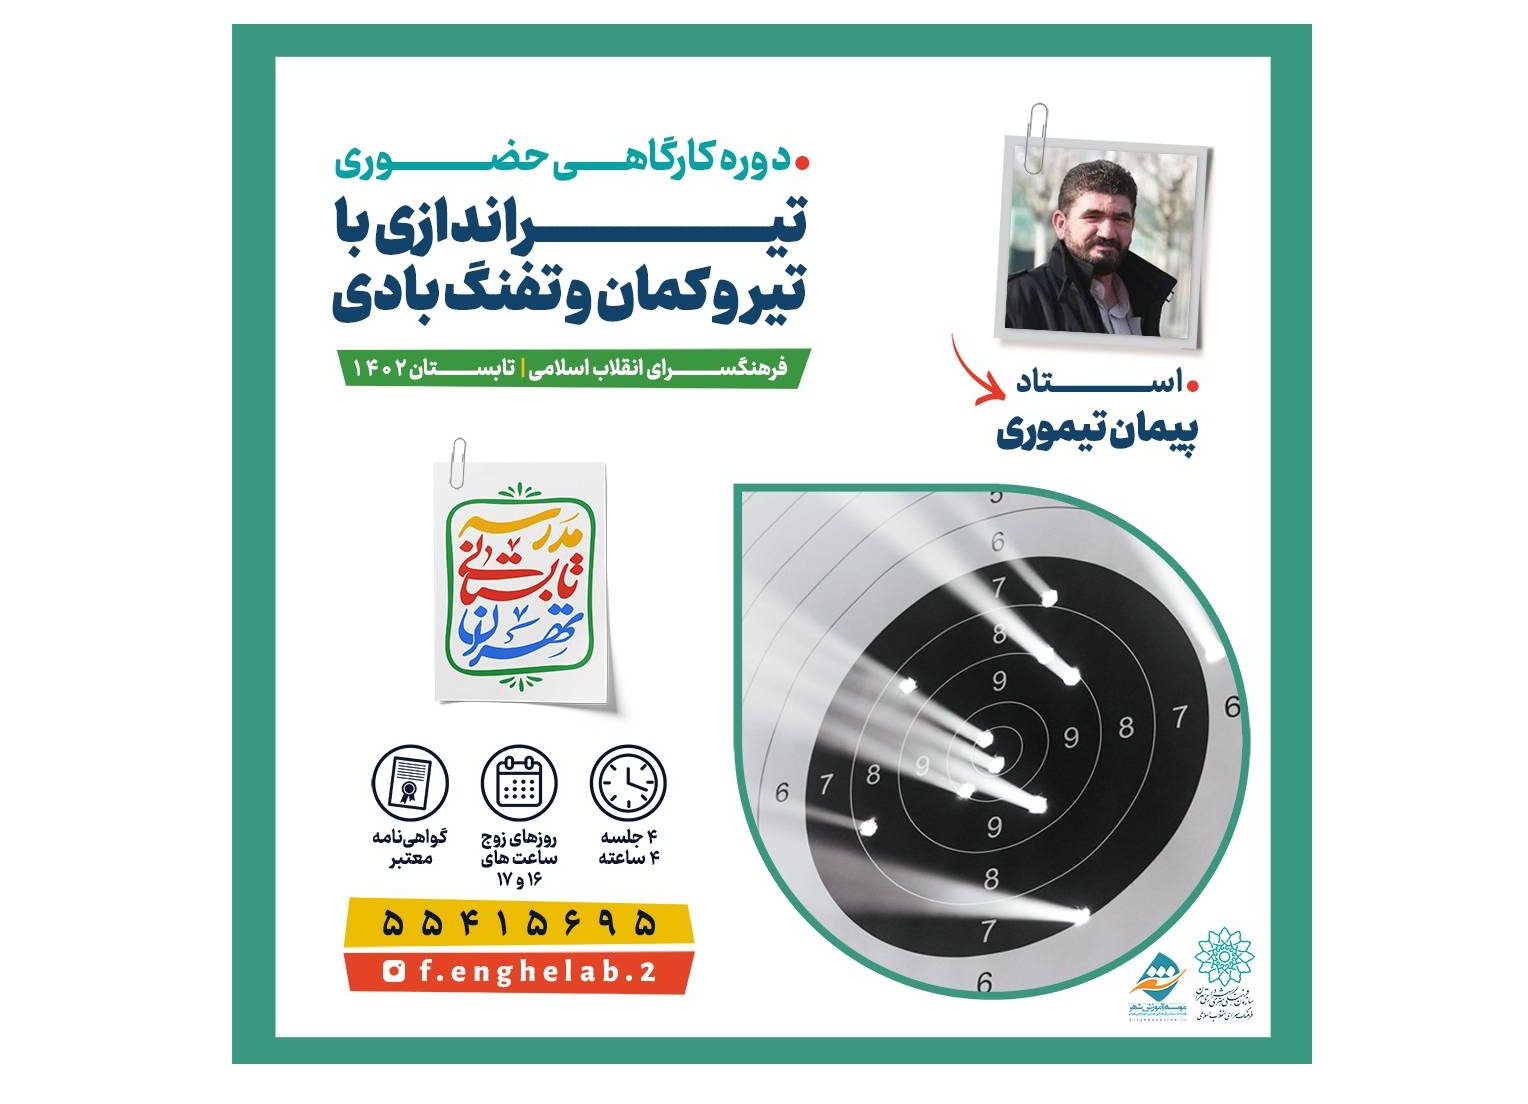 کارگاه آموزشی تیراندازی با کمان و تفنگ بادی در فرهنگسرای انقلاب اسلامی